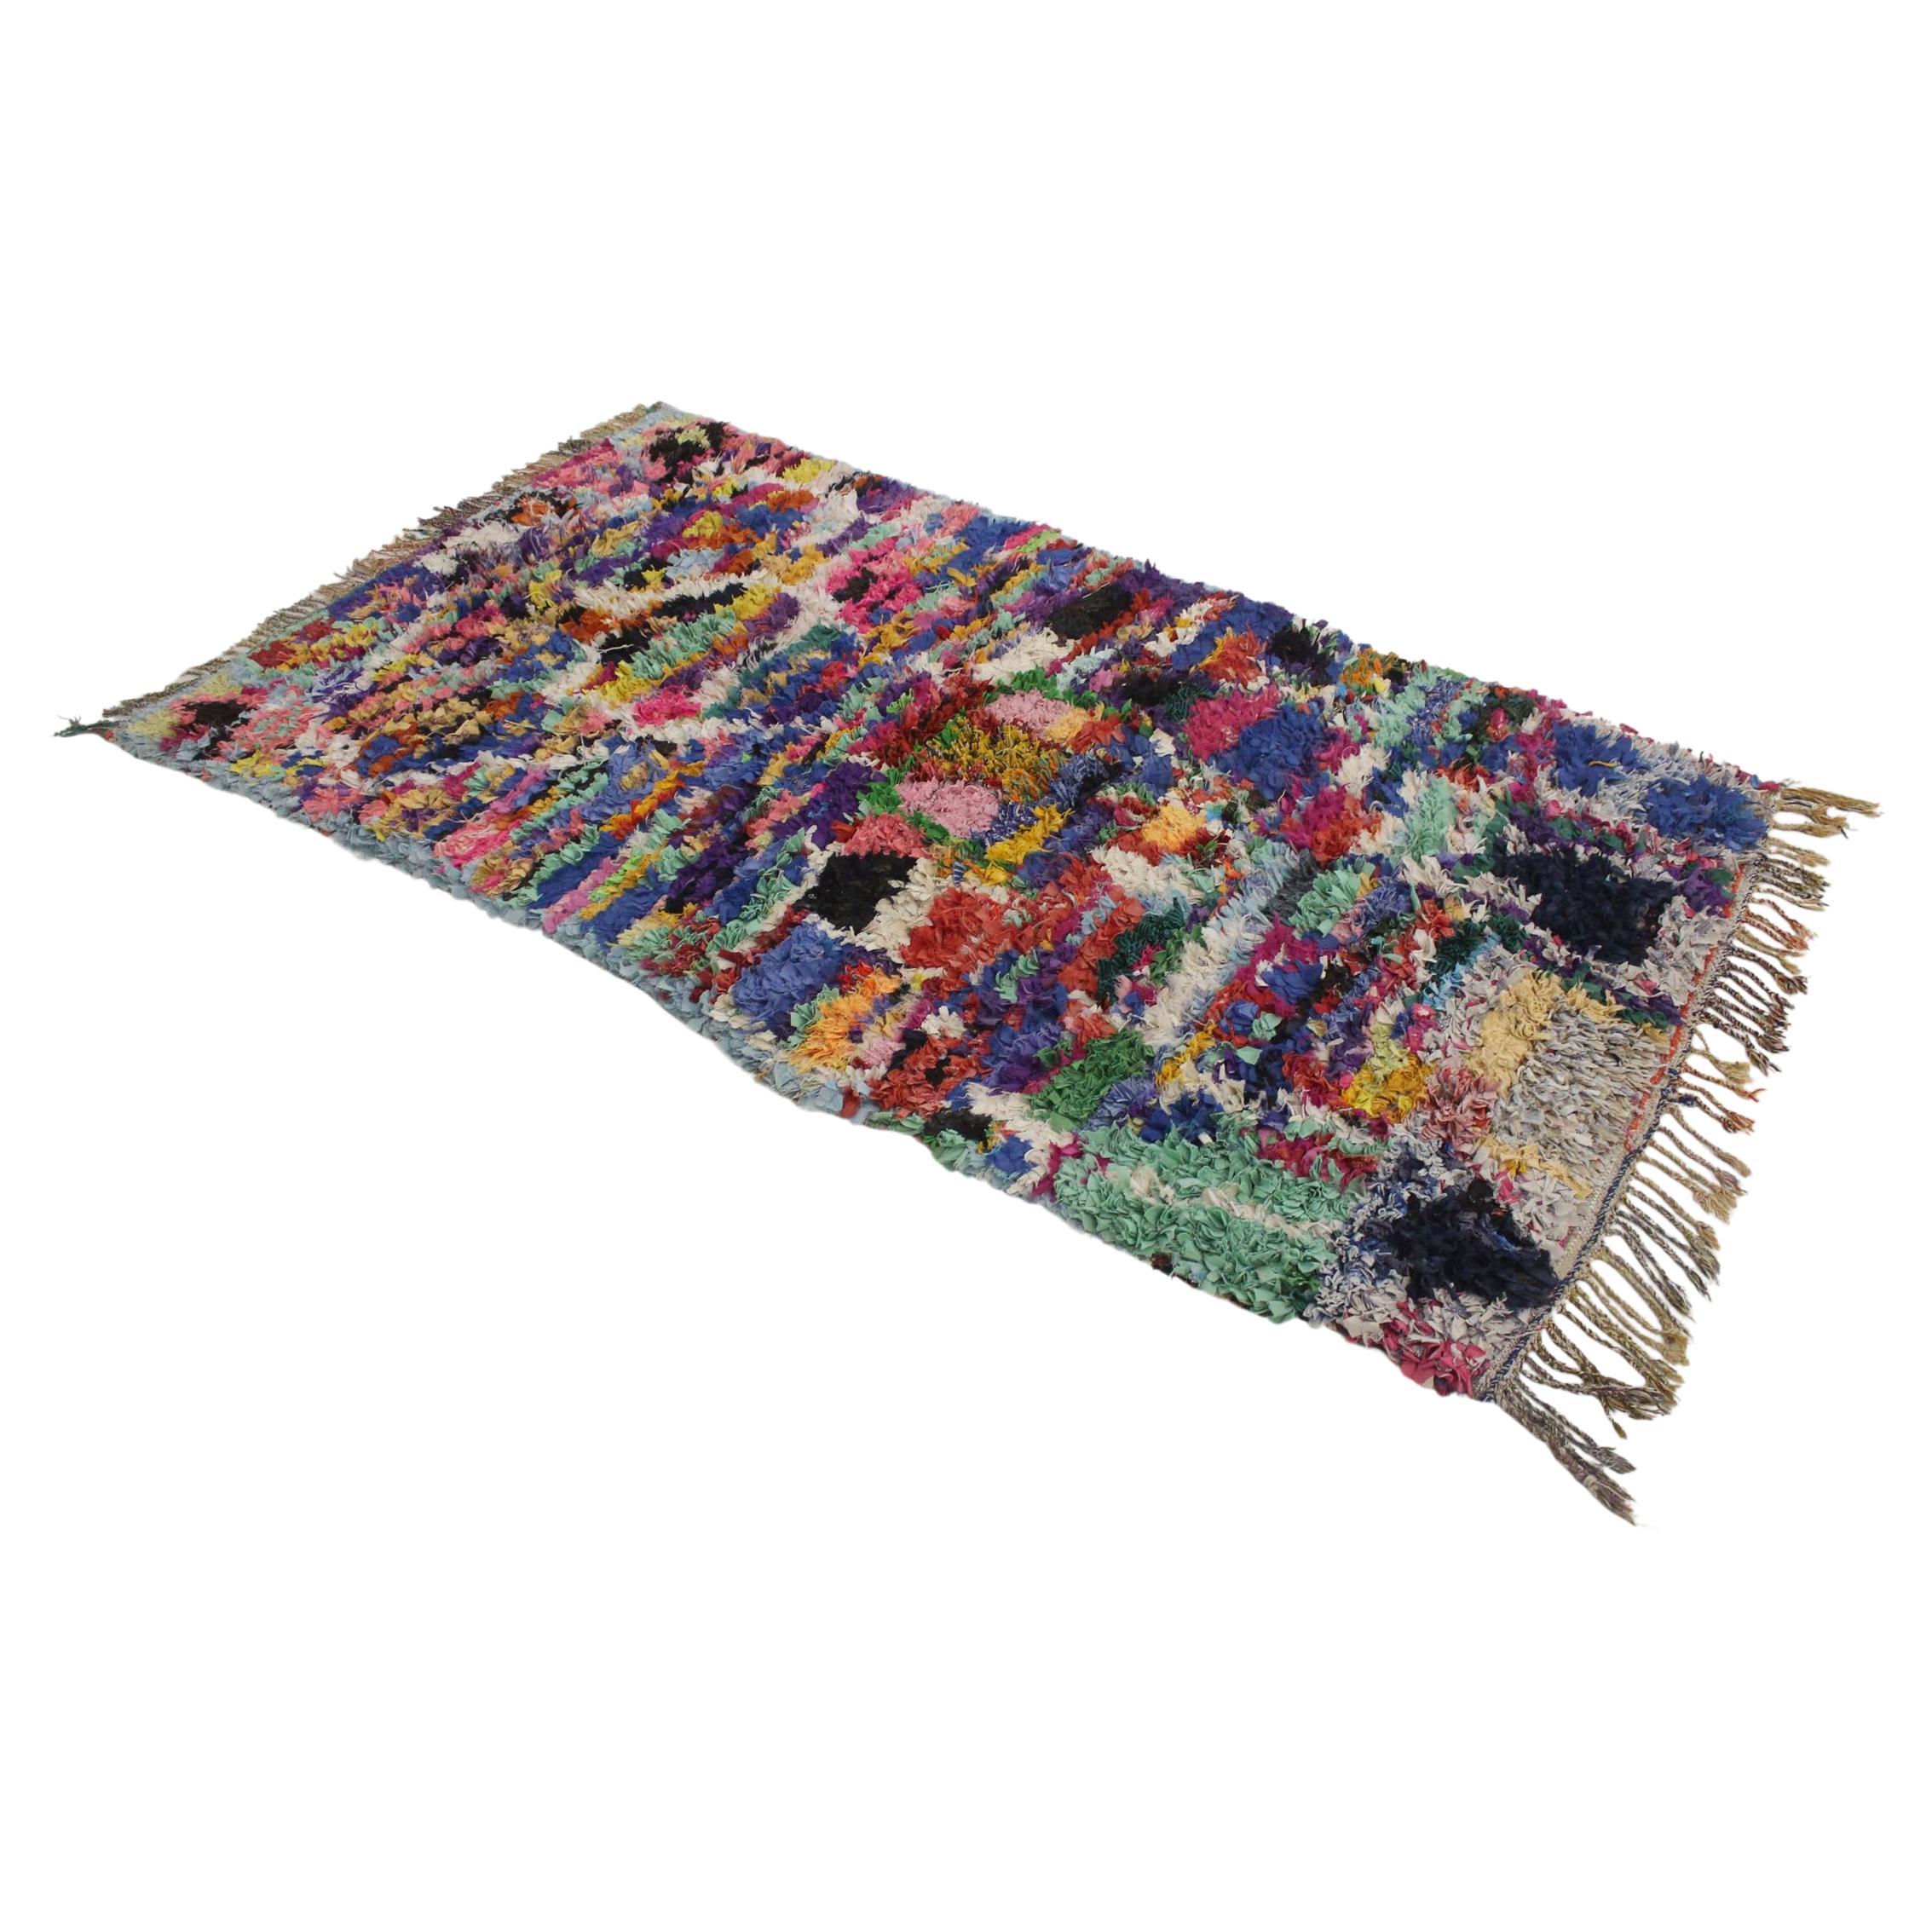 Vintage Moroccan Boucherouite rug - Multicolor - 4x7feet / 123x213cm